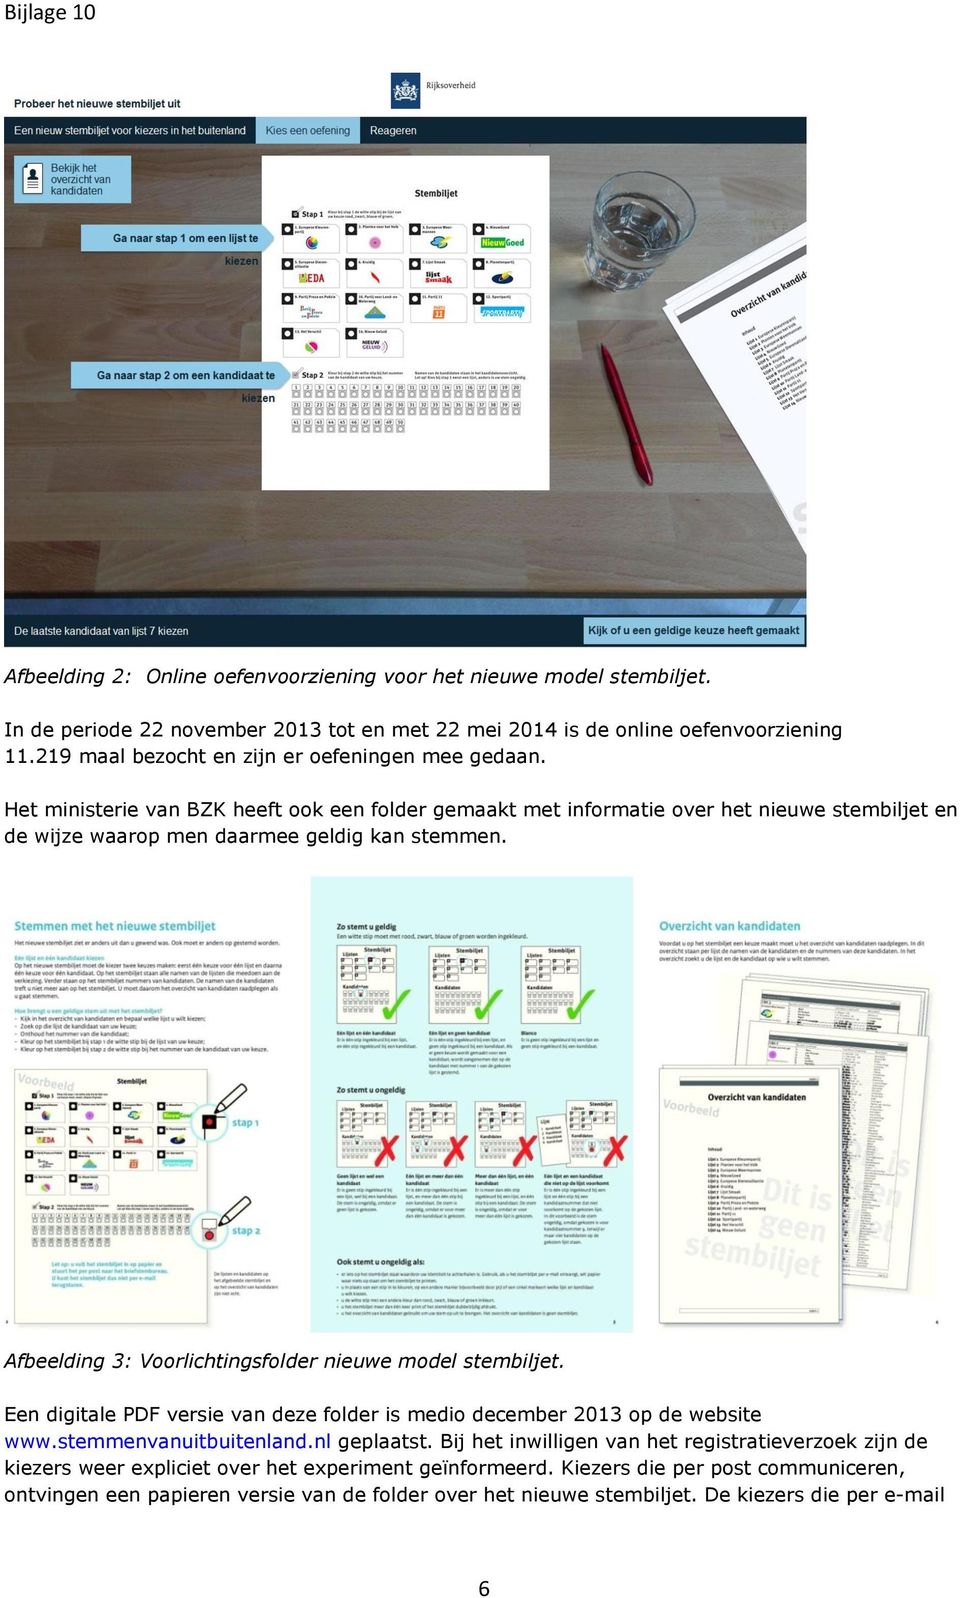 Afbeelding 3: Voorlichtingsfolder nieuwe model stembiljet. Een digitale PDF versie van deze folder is medio december 2013 op de website www.stemmenvanuitbuitenland.nl geplaatst.